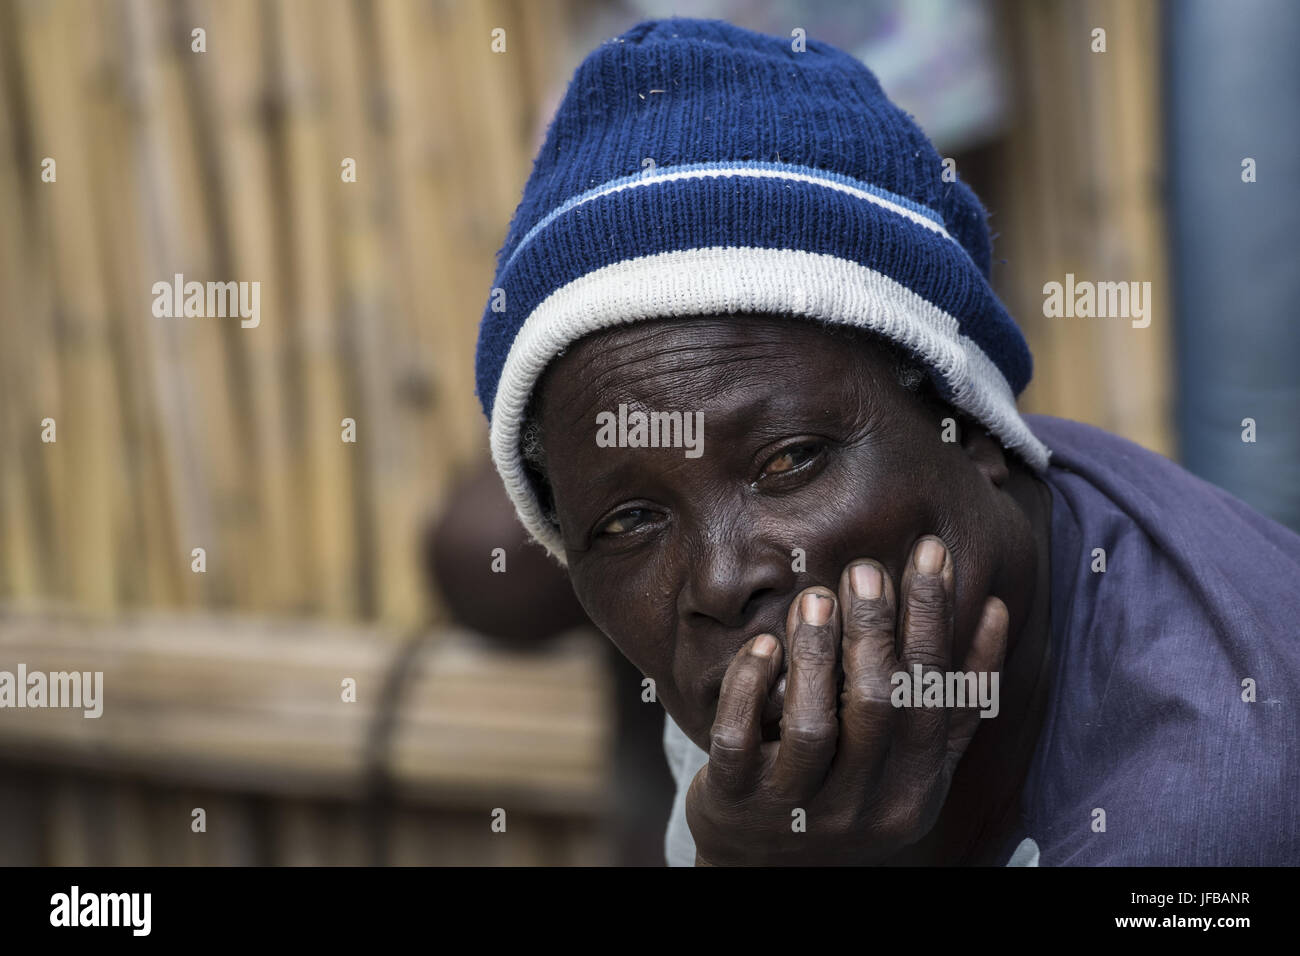 Retrato, hombre africano, app. 40 años Foto de stock